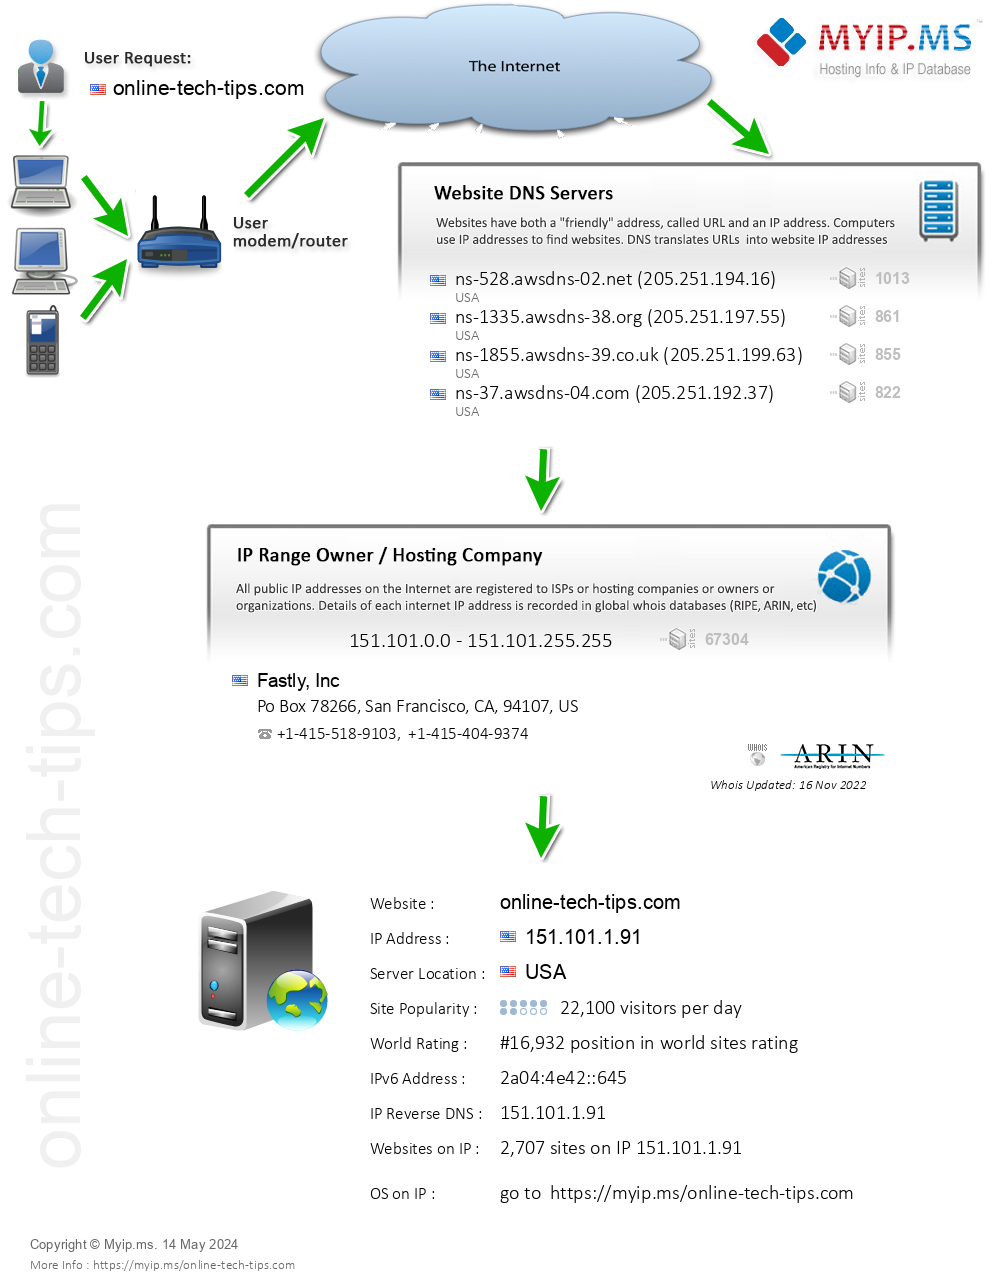 Online-tech-tips.com - Website Hosting Visual IP Diagram